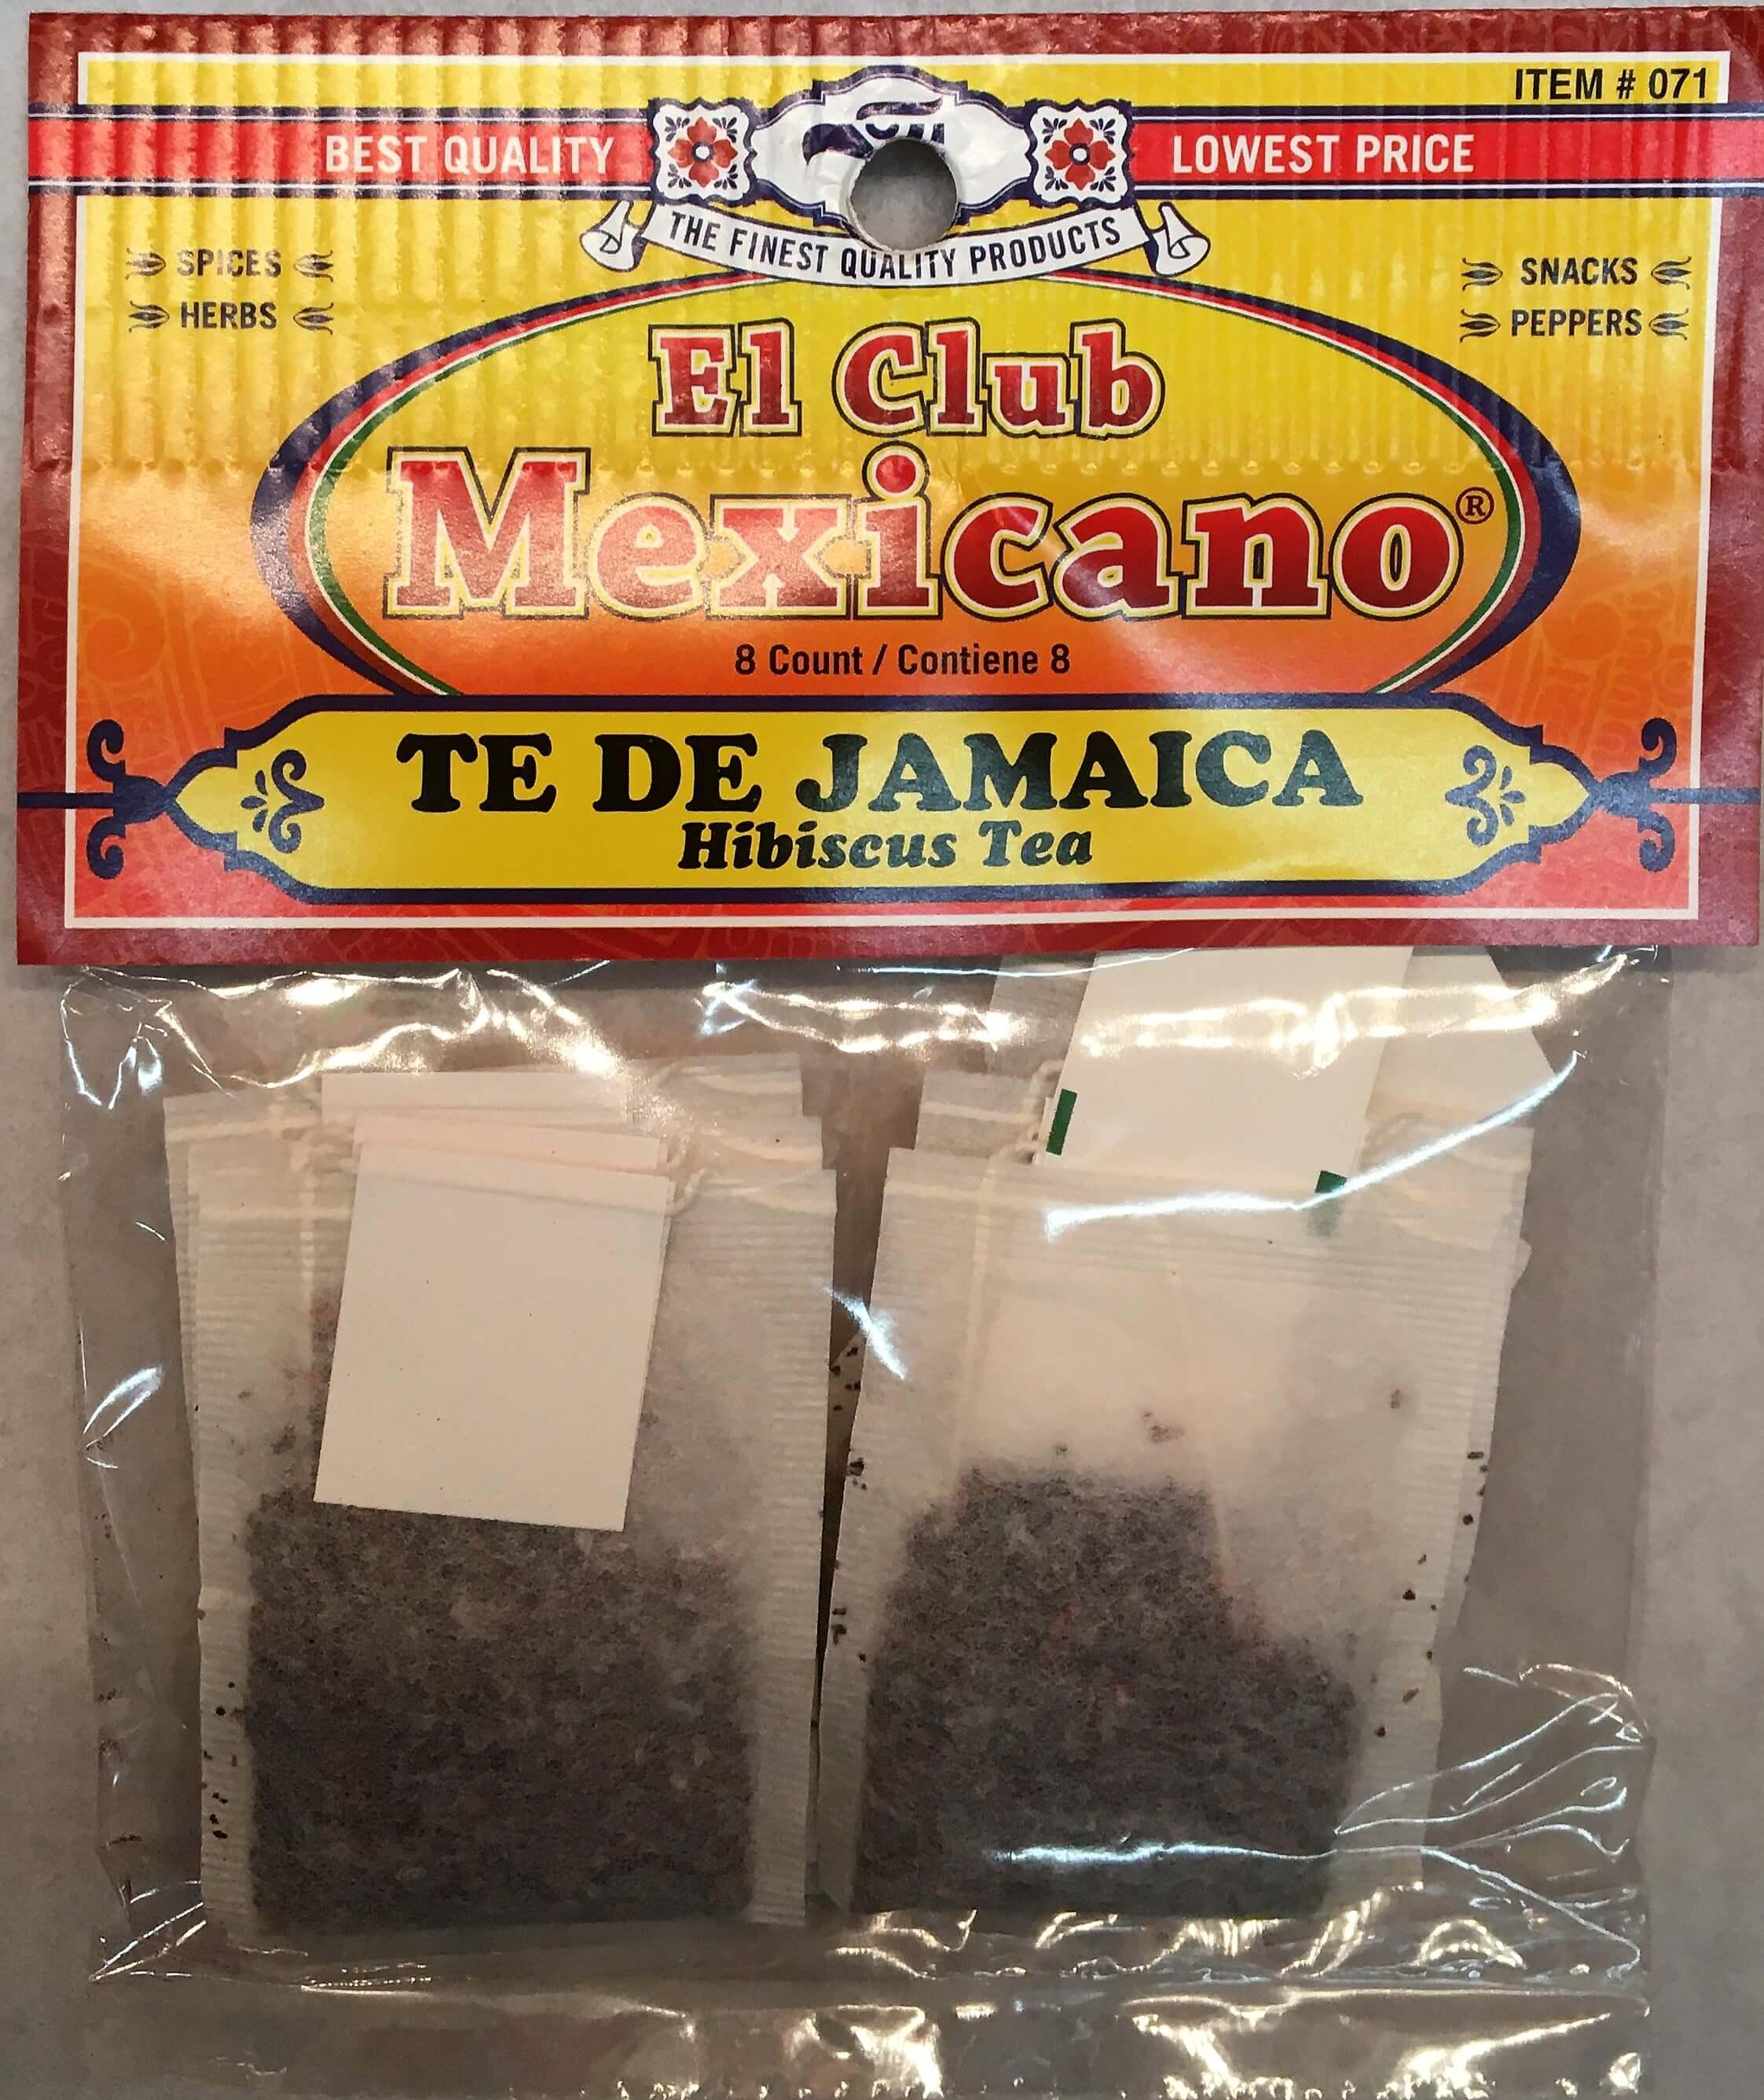 El Club Mexicano - Hibiscus Tea 8 count.